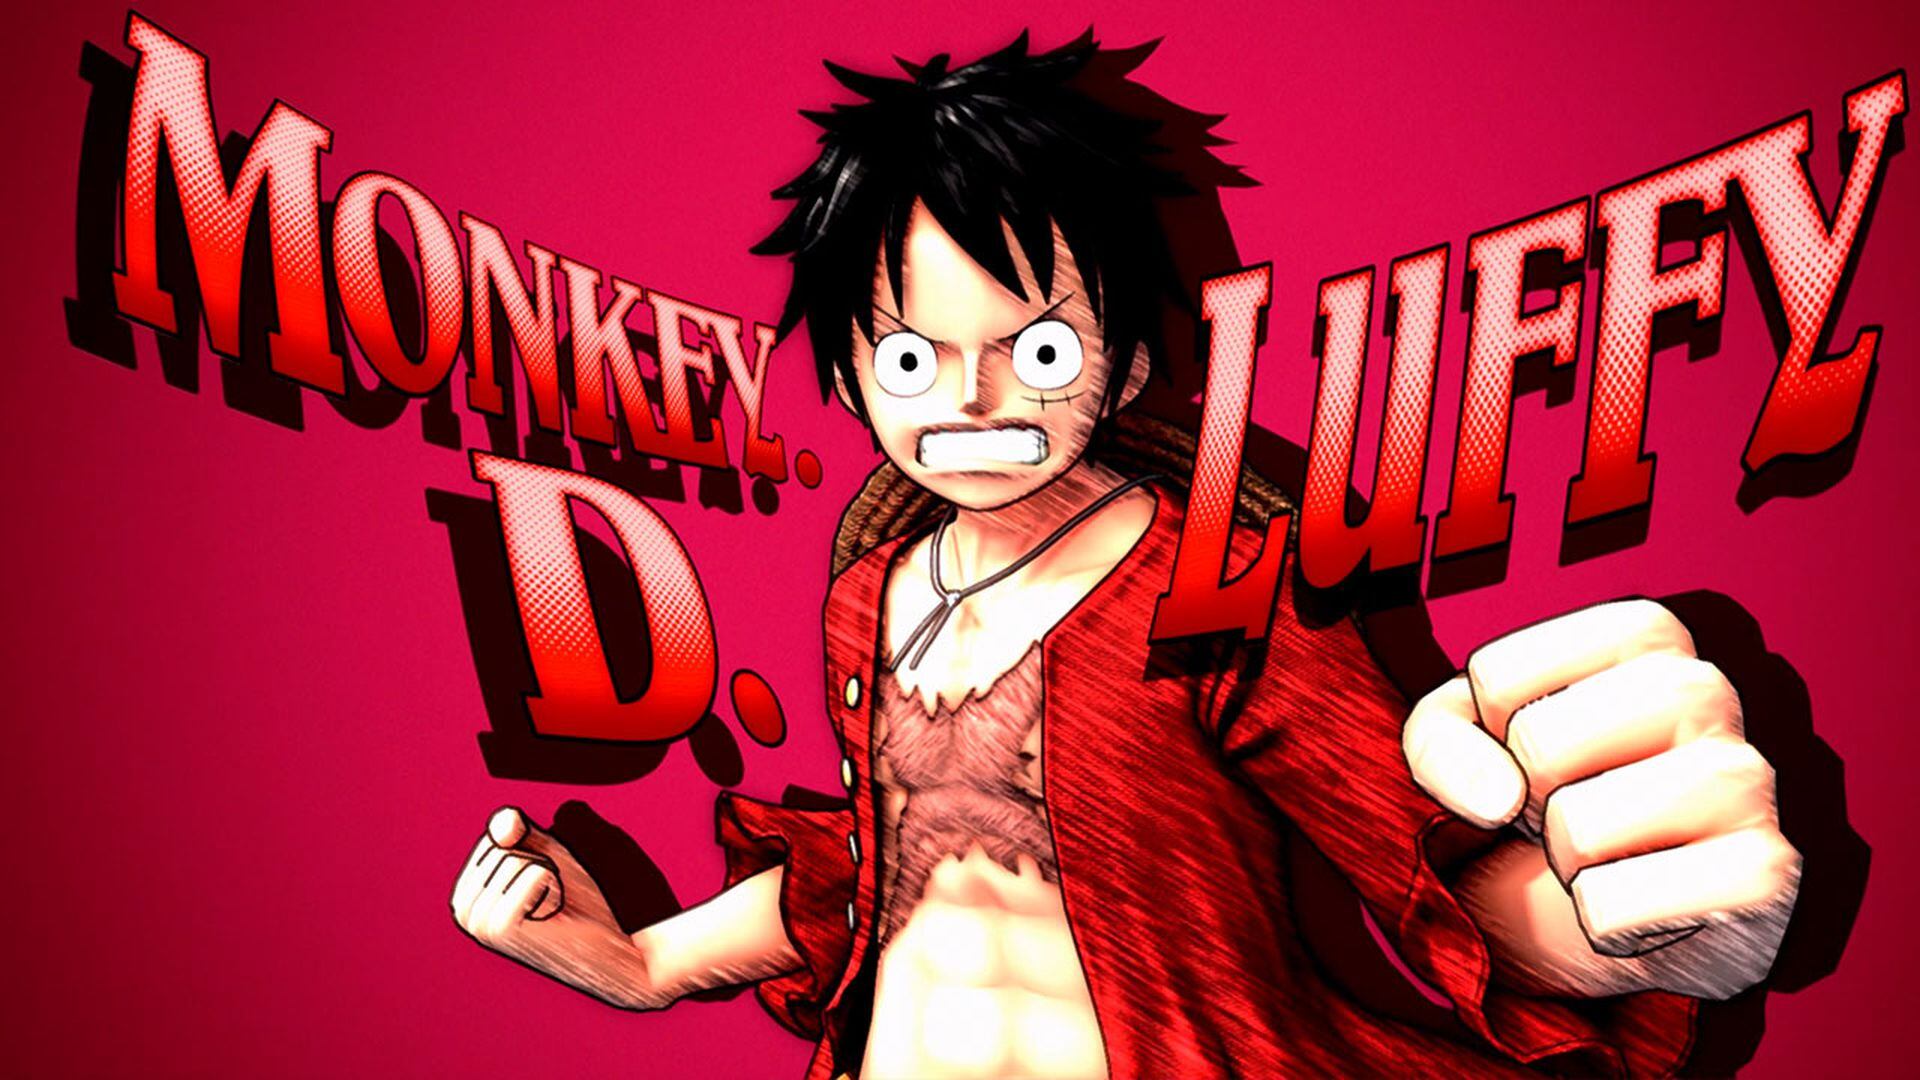 7 diferencias de One Piece entre el anime y el manga